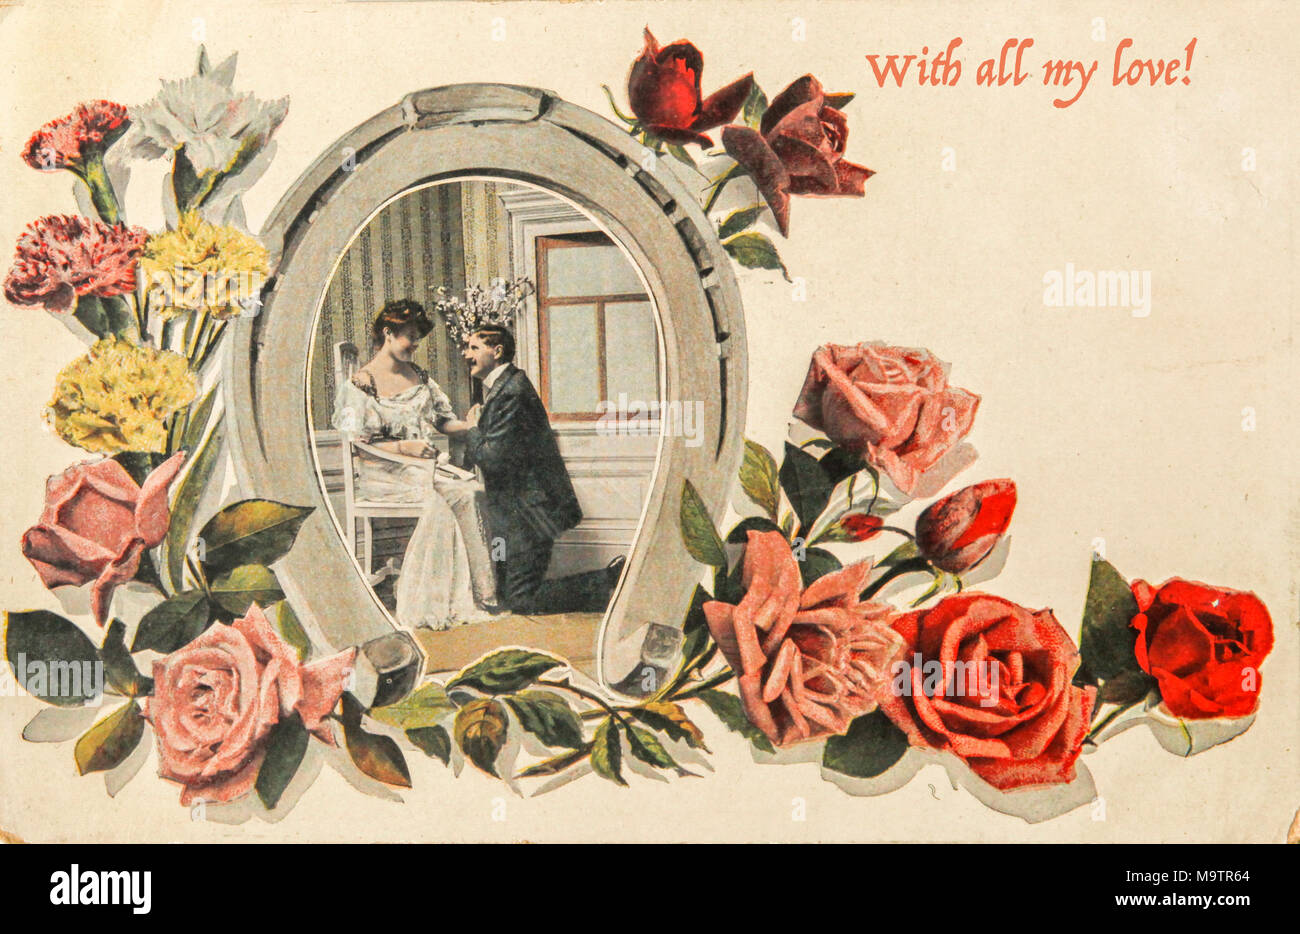 Vintage valentine card de 1915 avec couple aimant en fer à cheval avec des roses et de l'image Texte "Avec tout mon amour" Banque D'Images